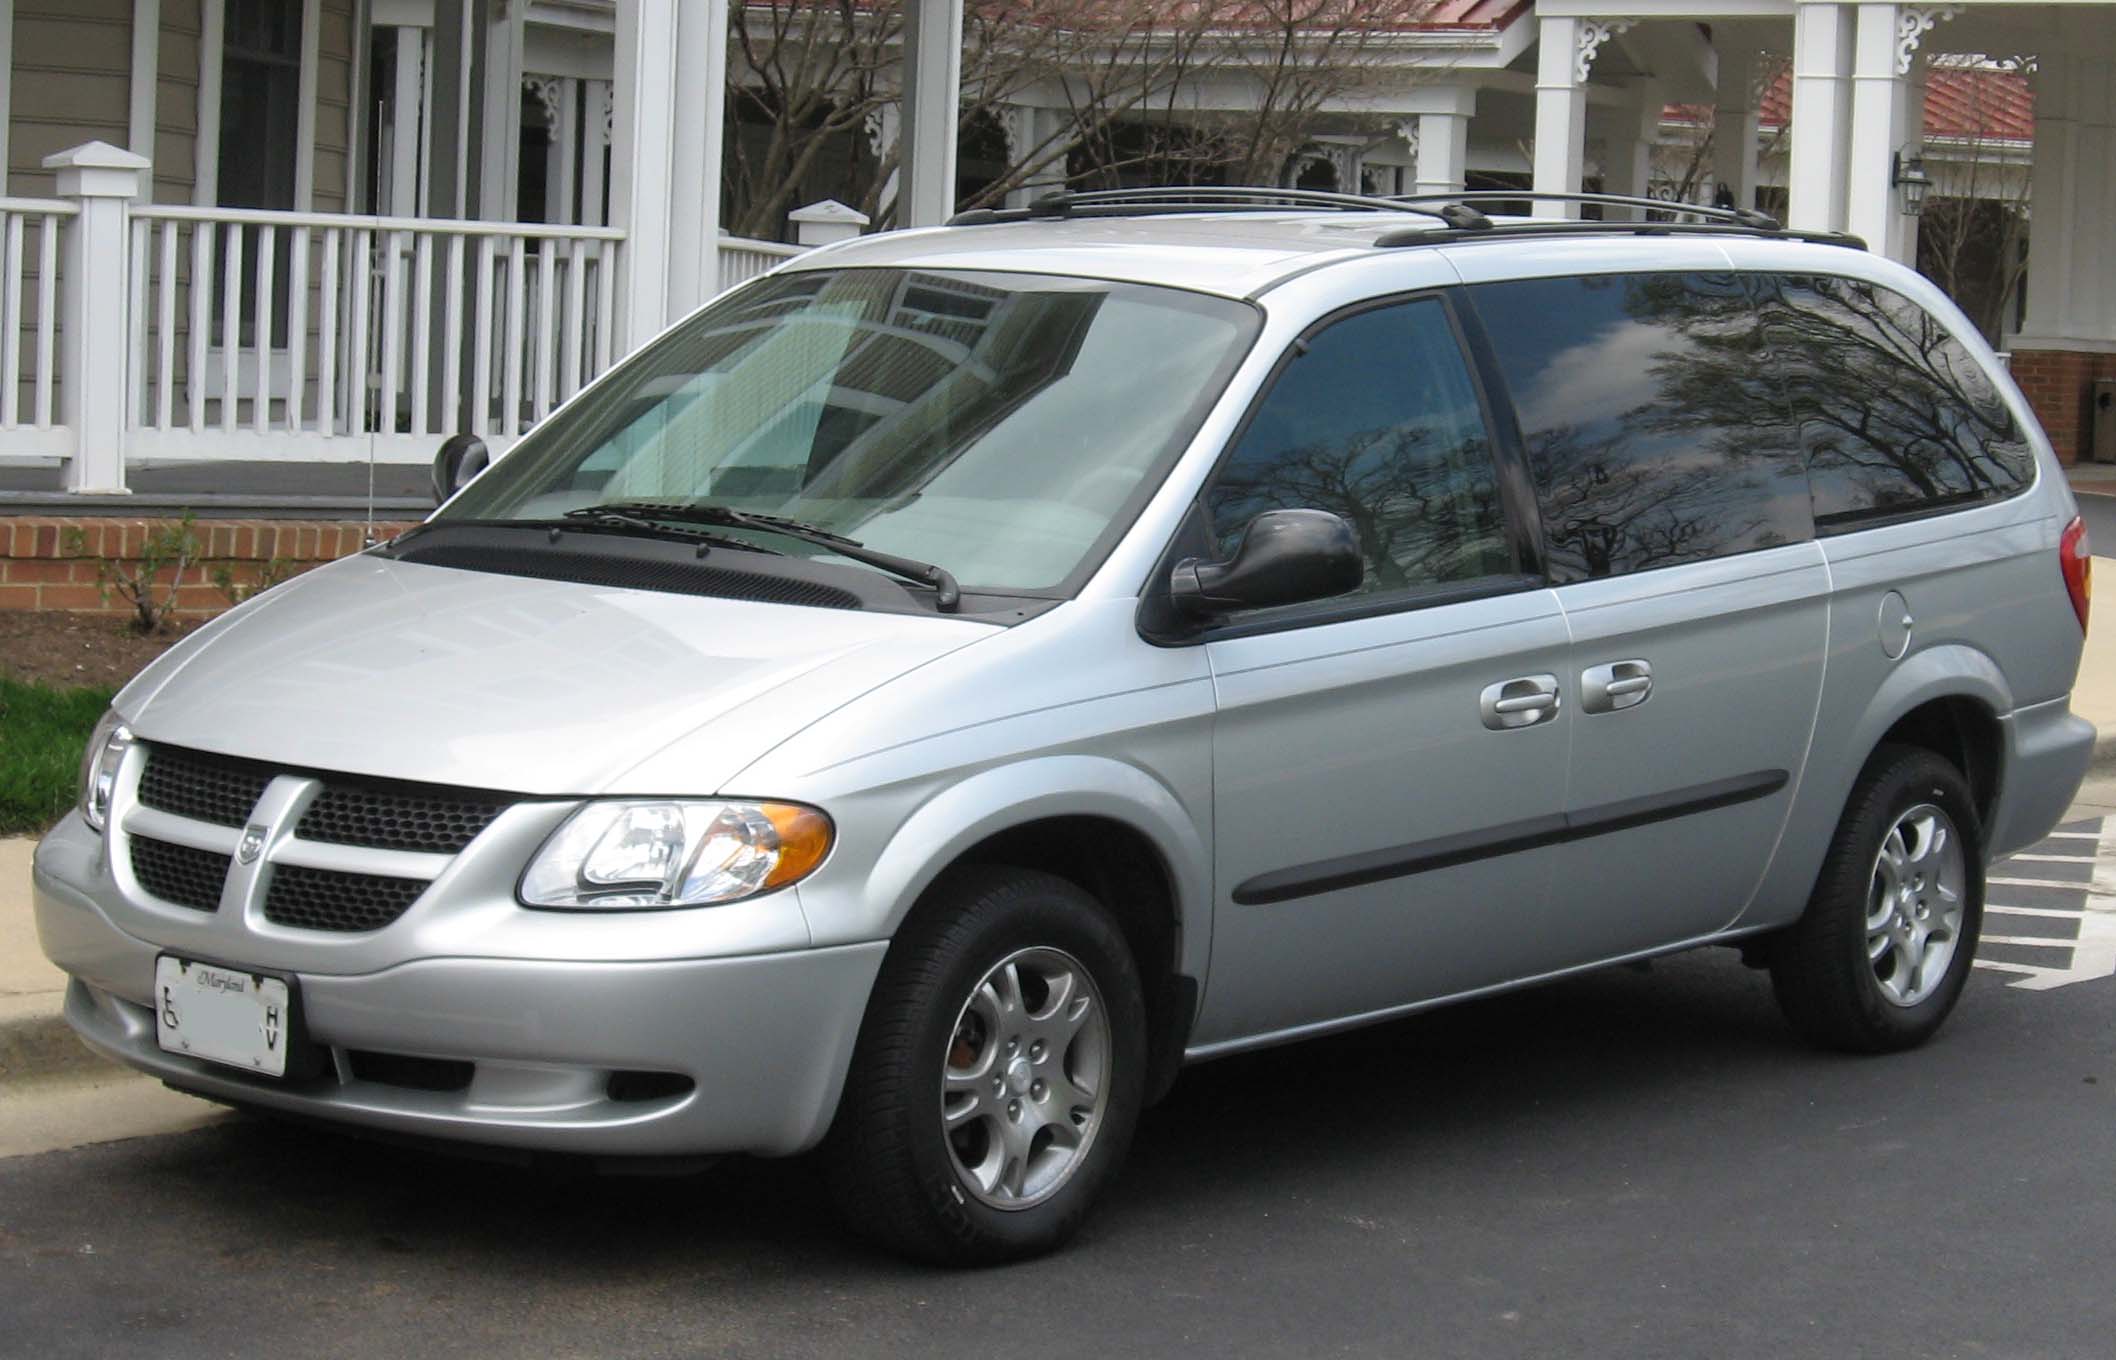 Chrysler minivans (RS) - Wikipedia